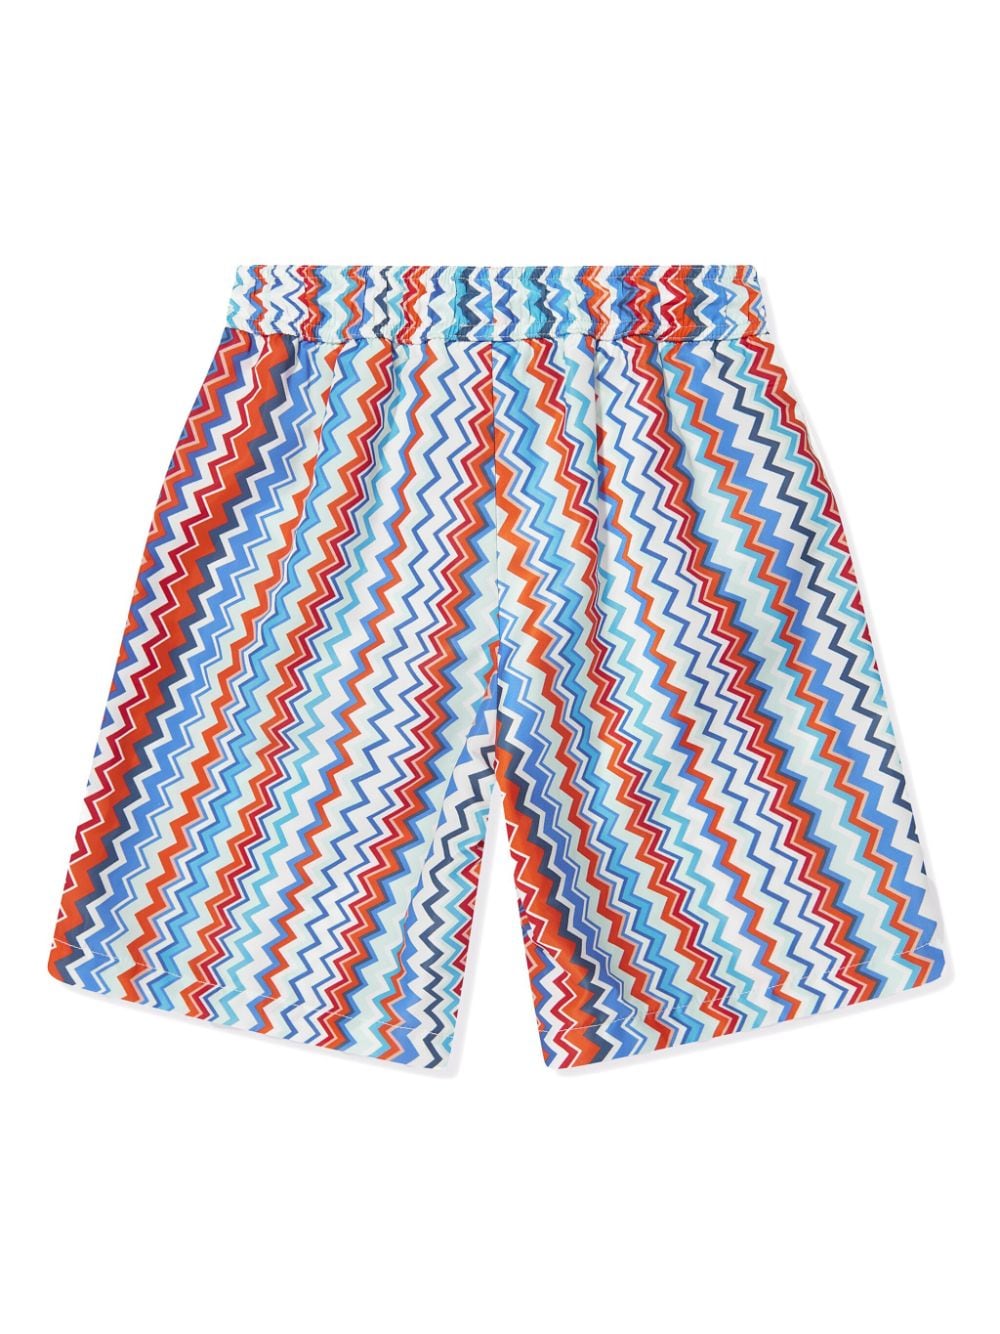 Multicolored swim shorts for boys